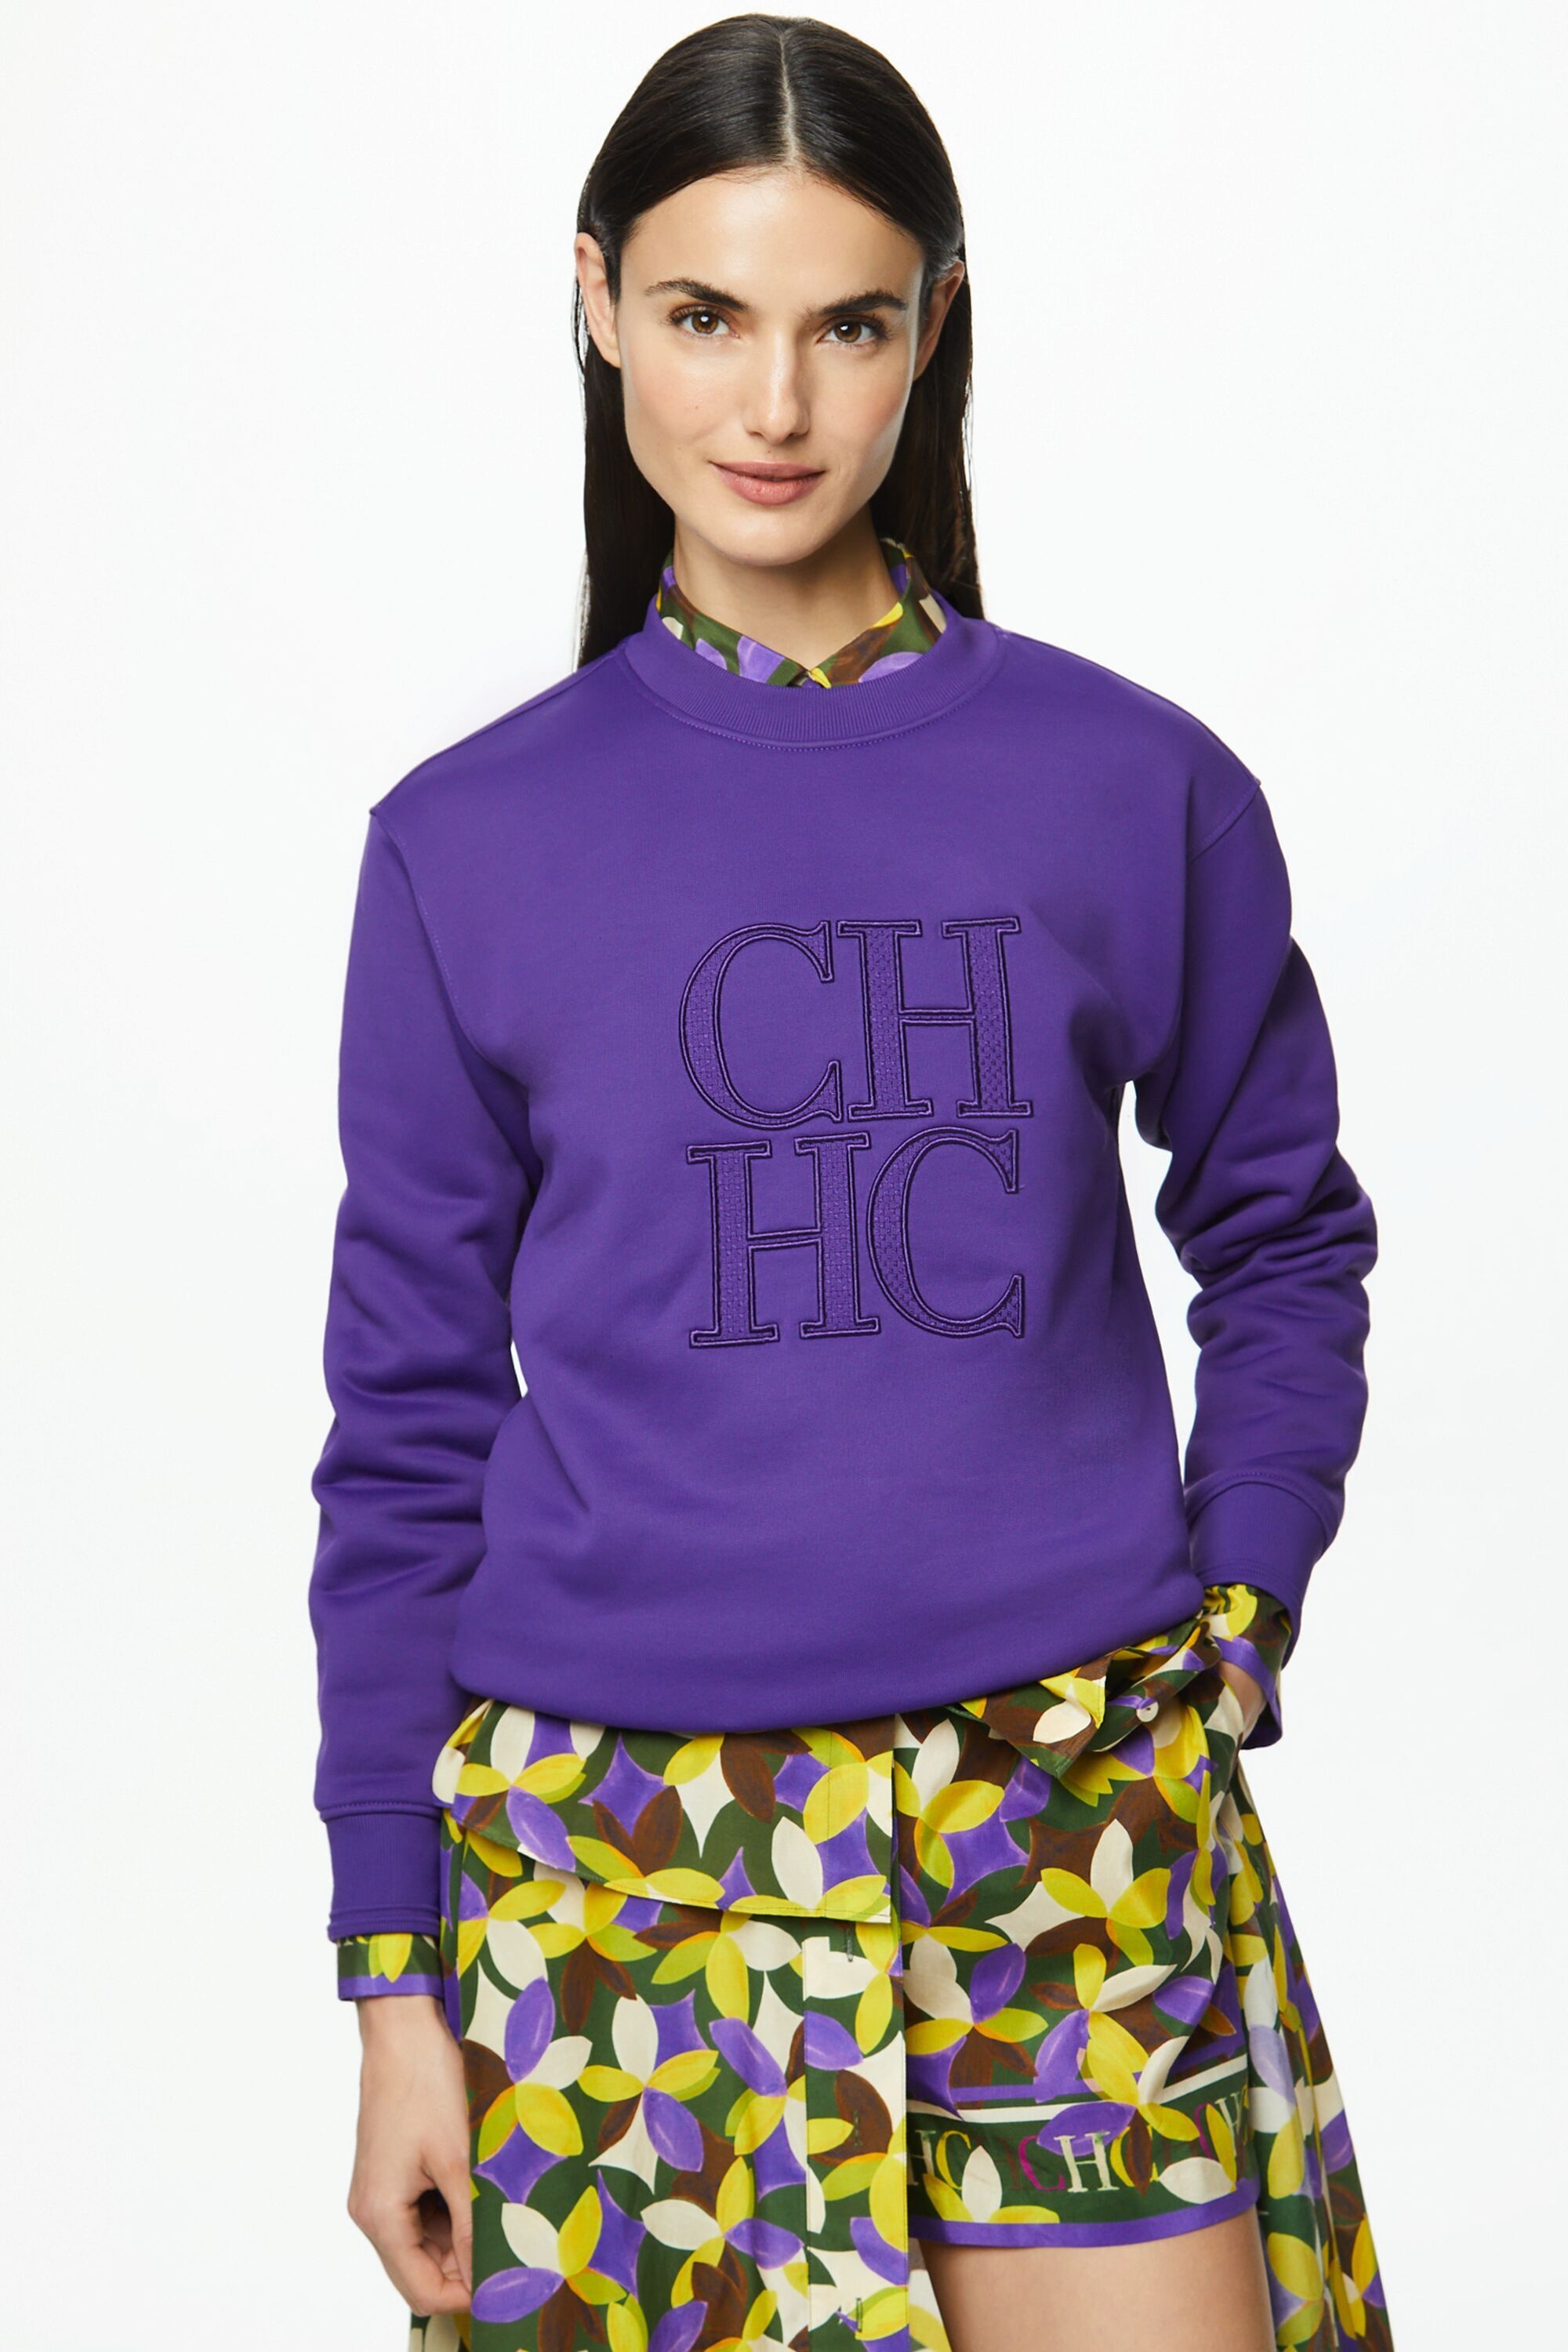 CH embroidered fleece sweatshirt